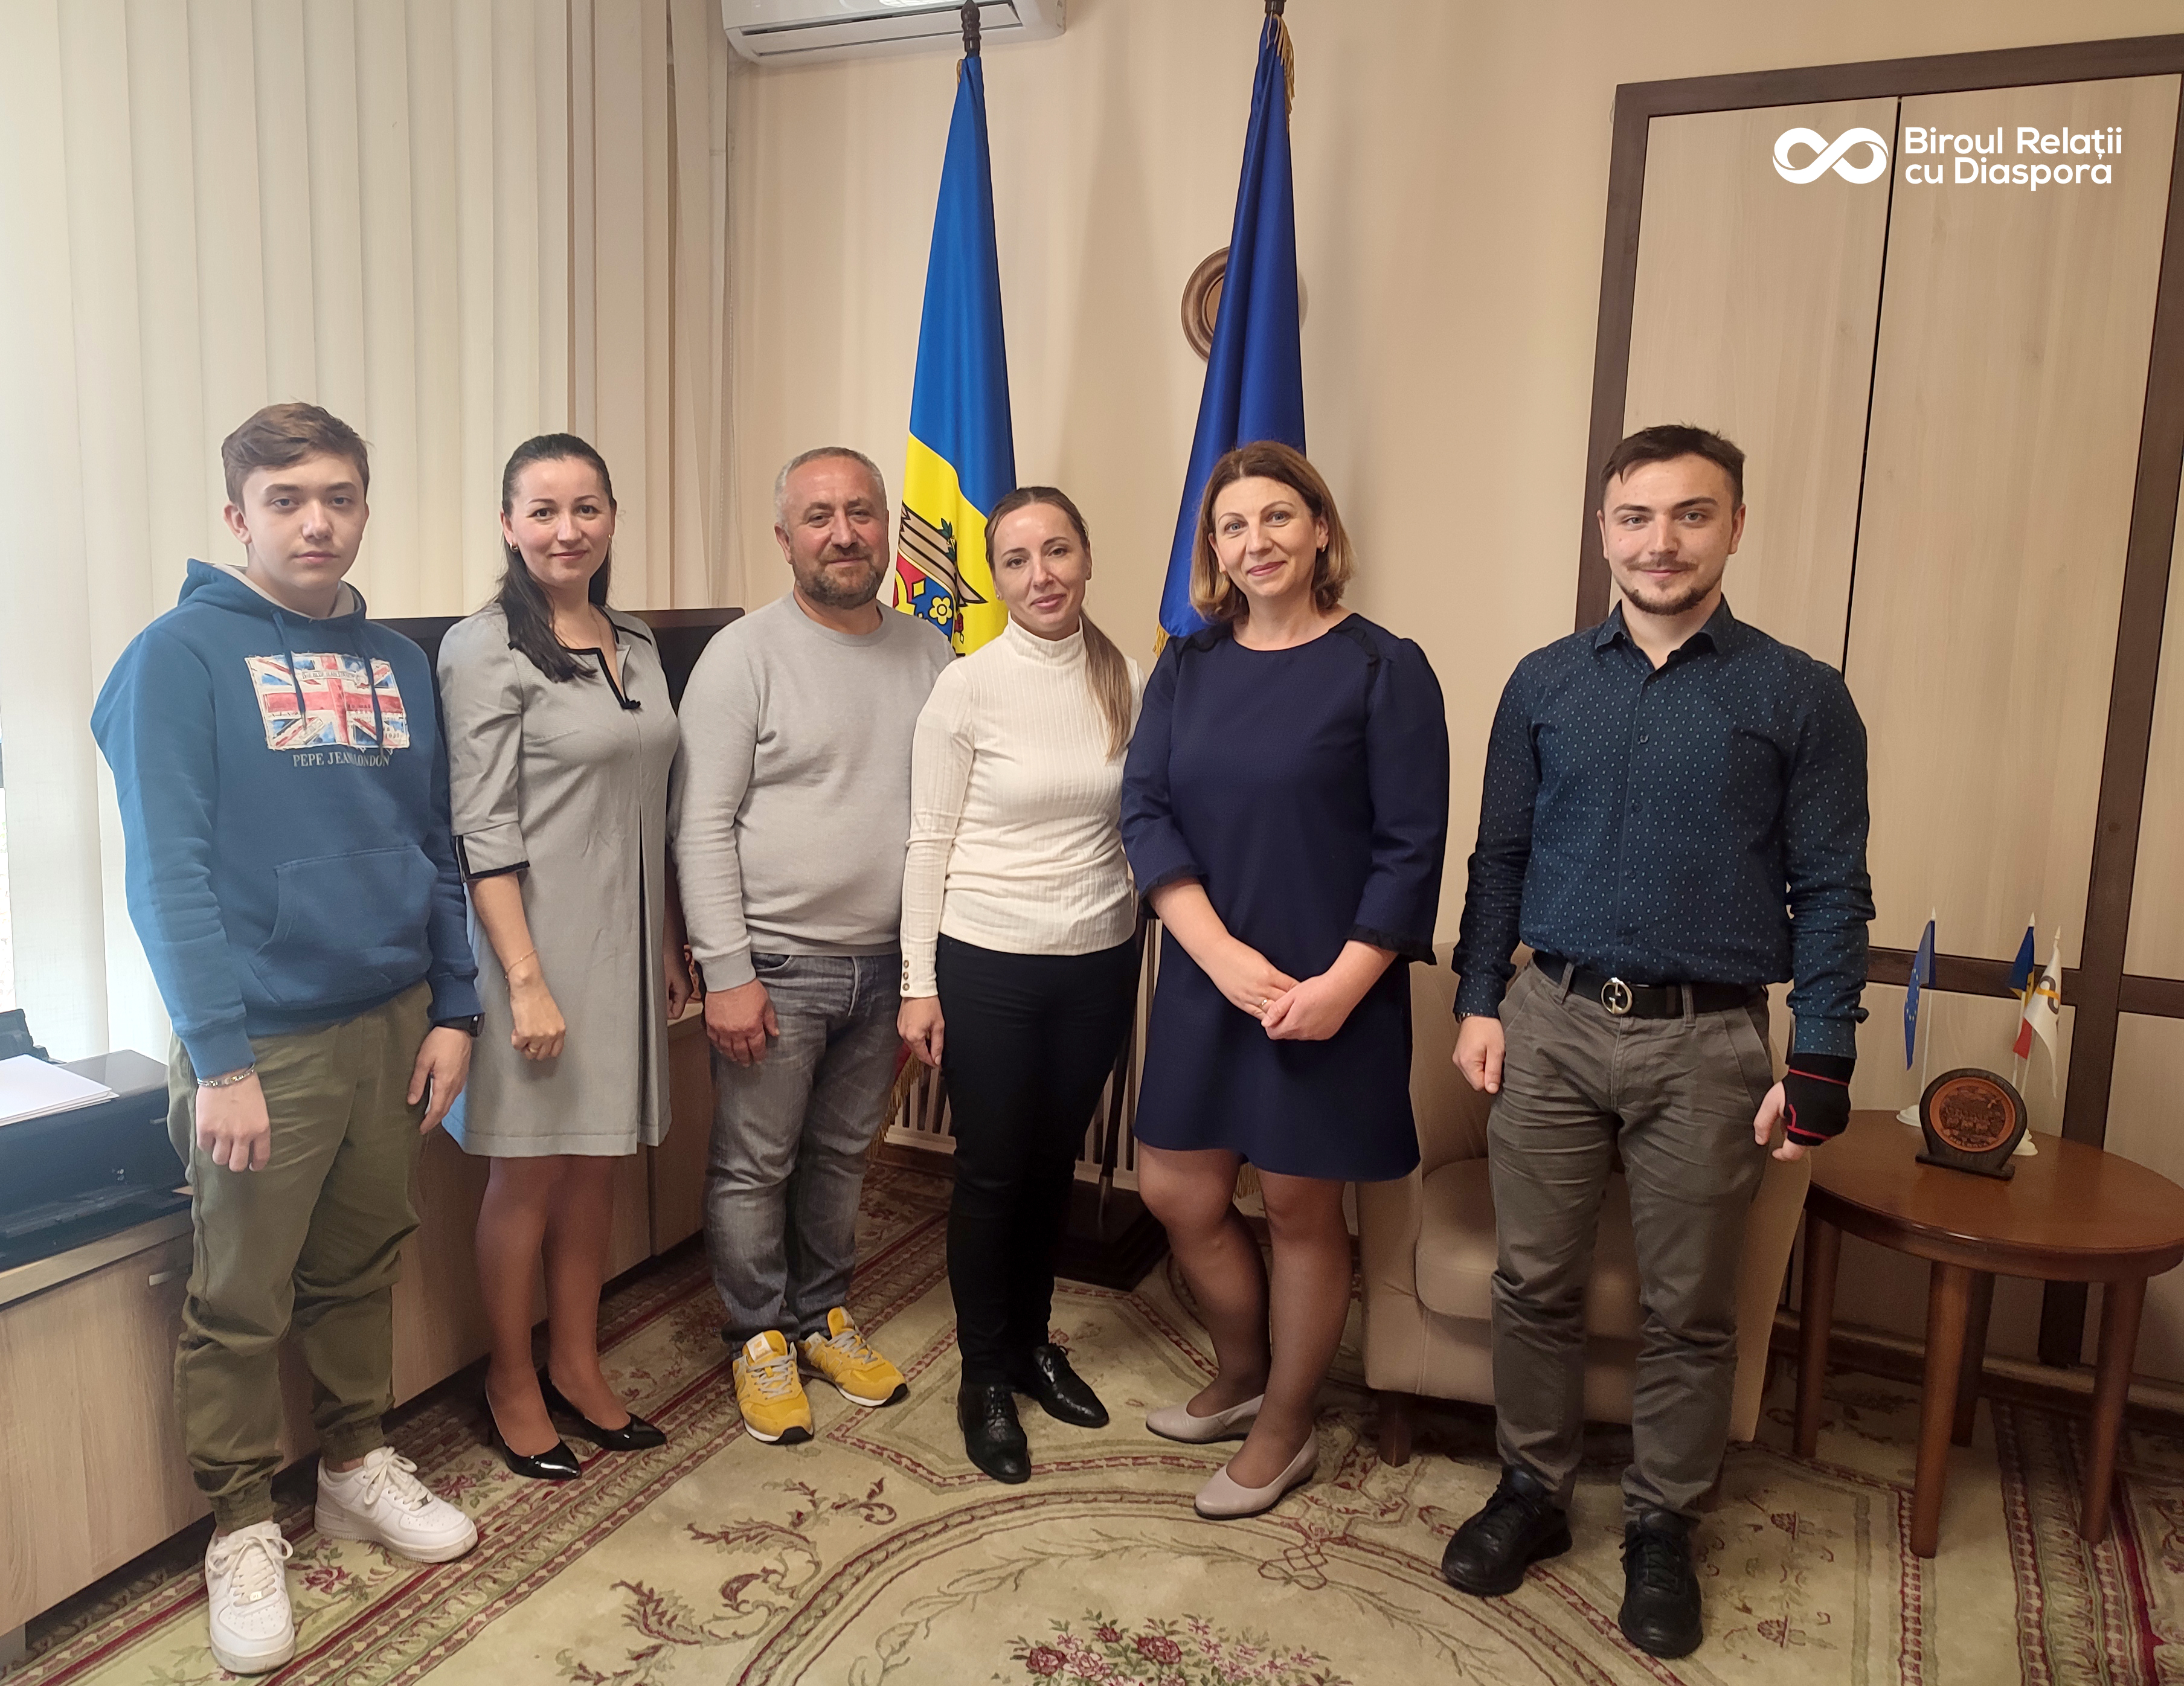 Membrii familiei Chiriac, reveniți la baștină, au vizitat Biroul relații cu diaspora